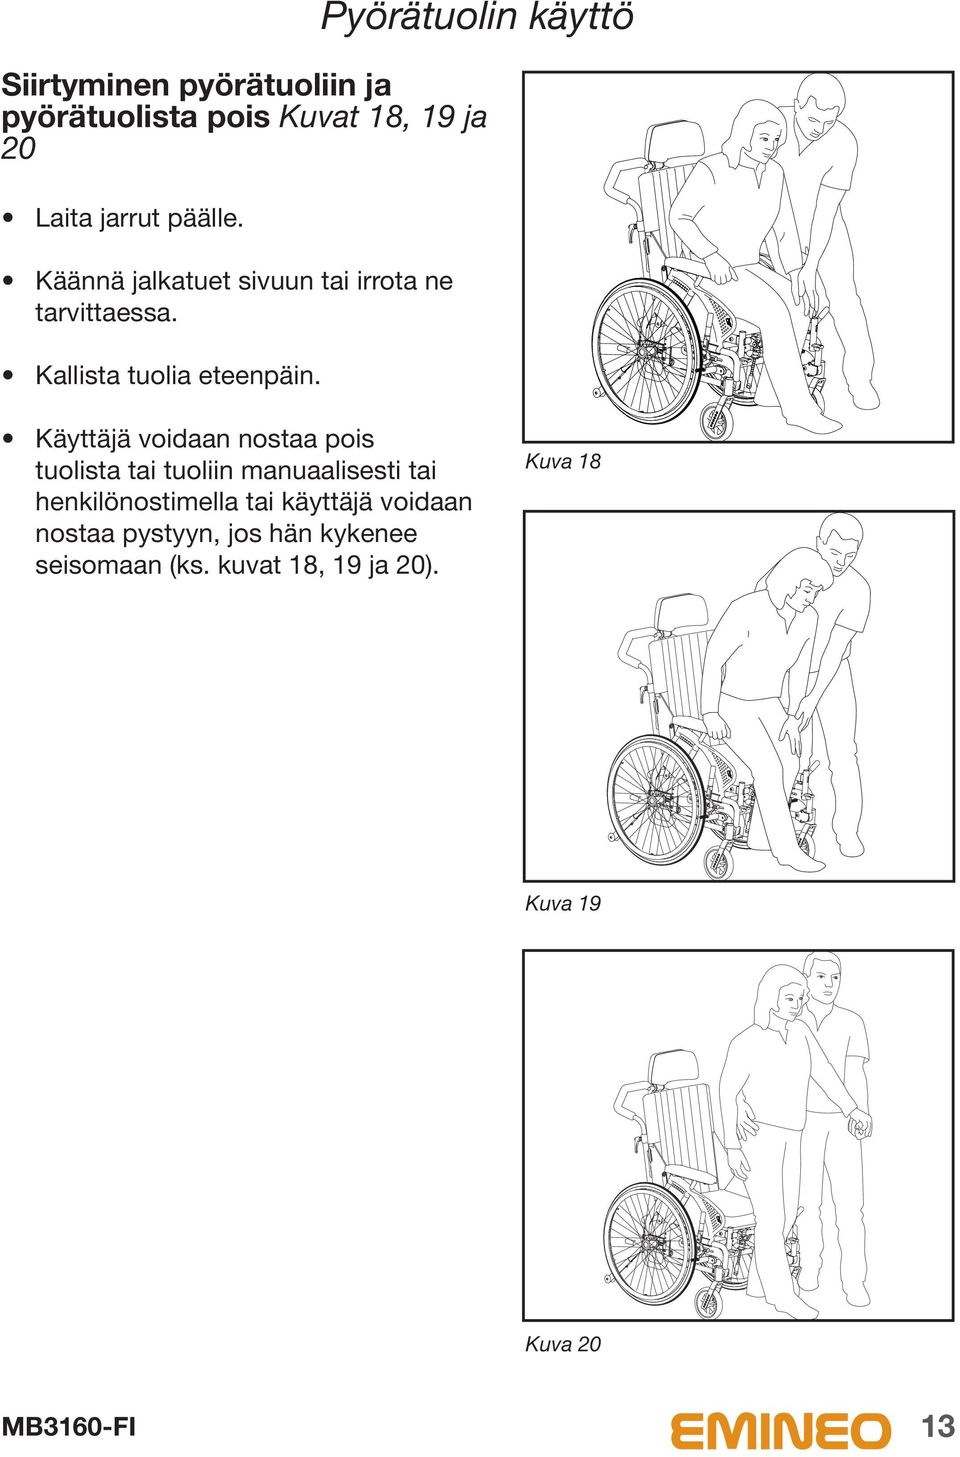 Pyörätuolin käyttö Käyttäjä voidaan nostaa pois tuolista tai tuoliin manuaalisesti tai